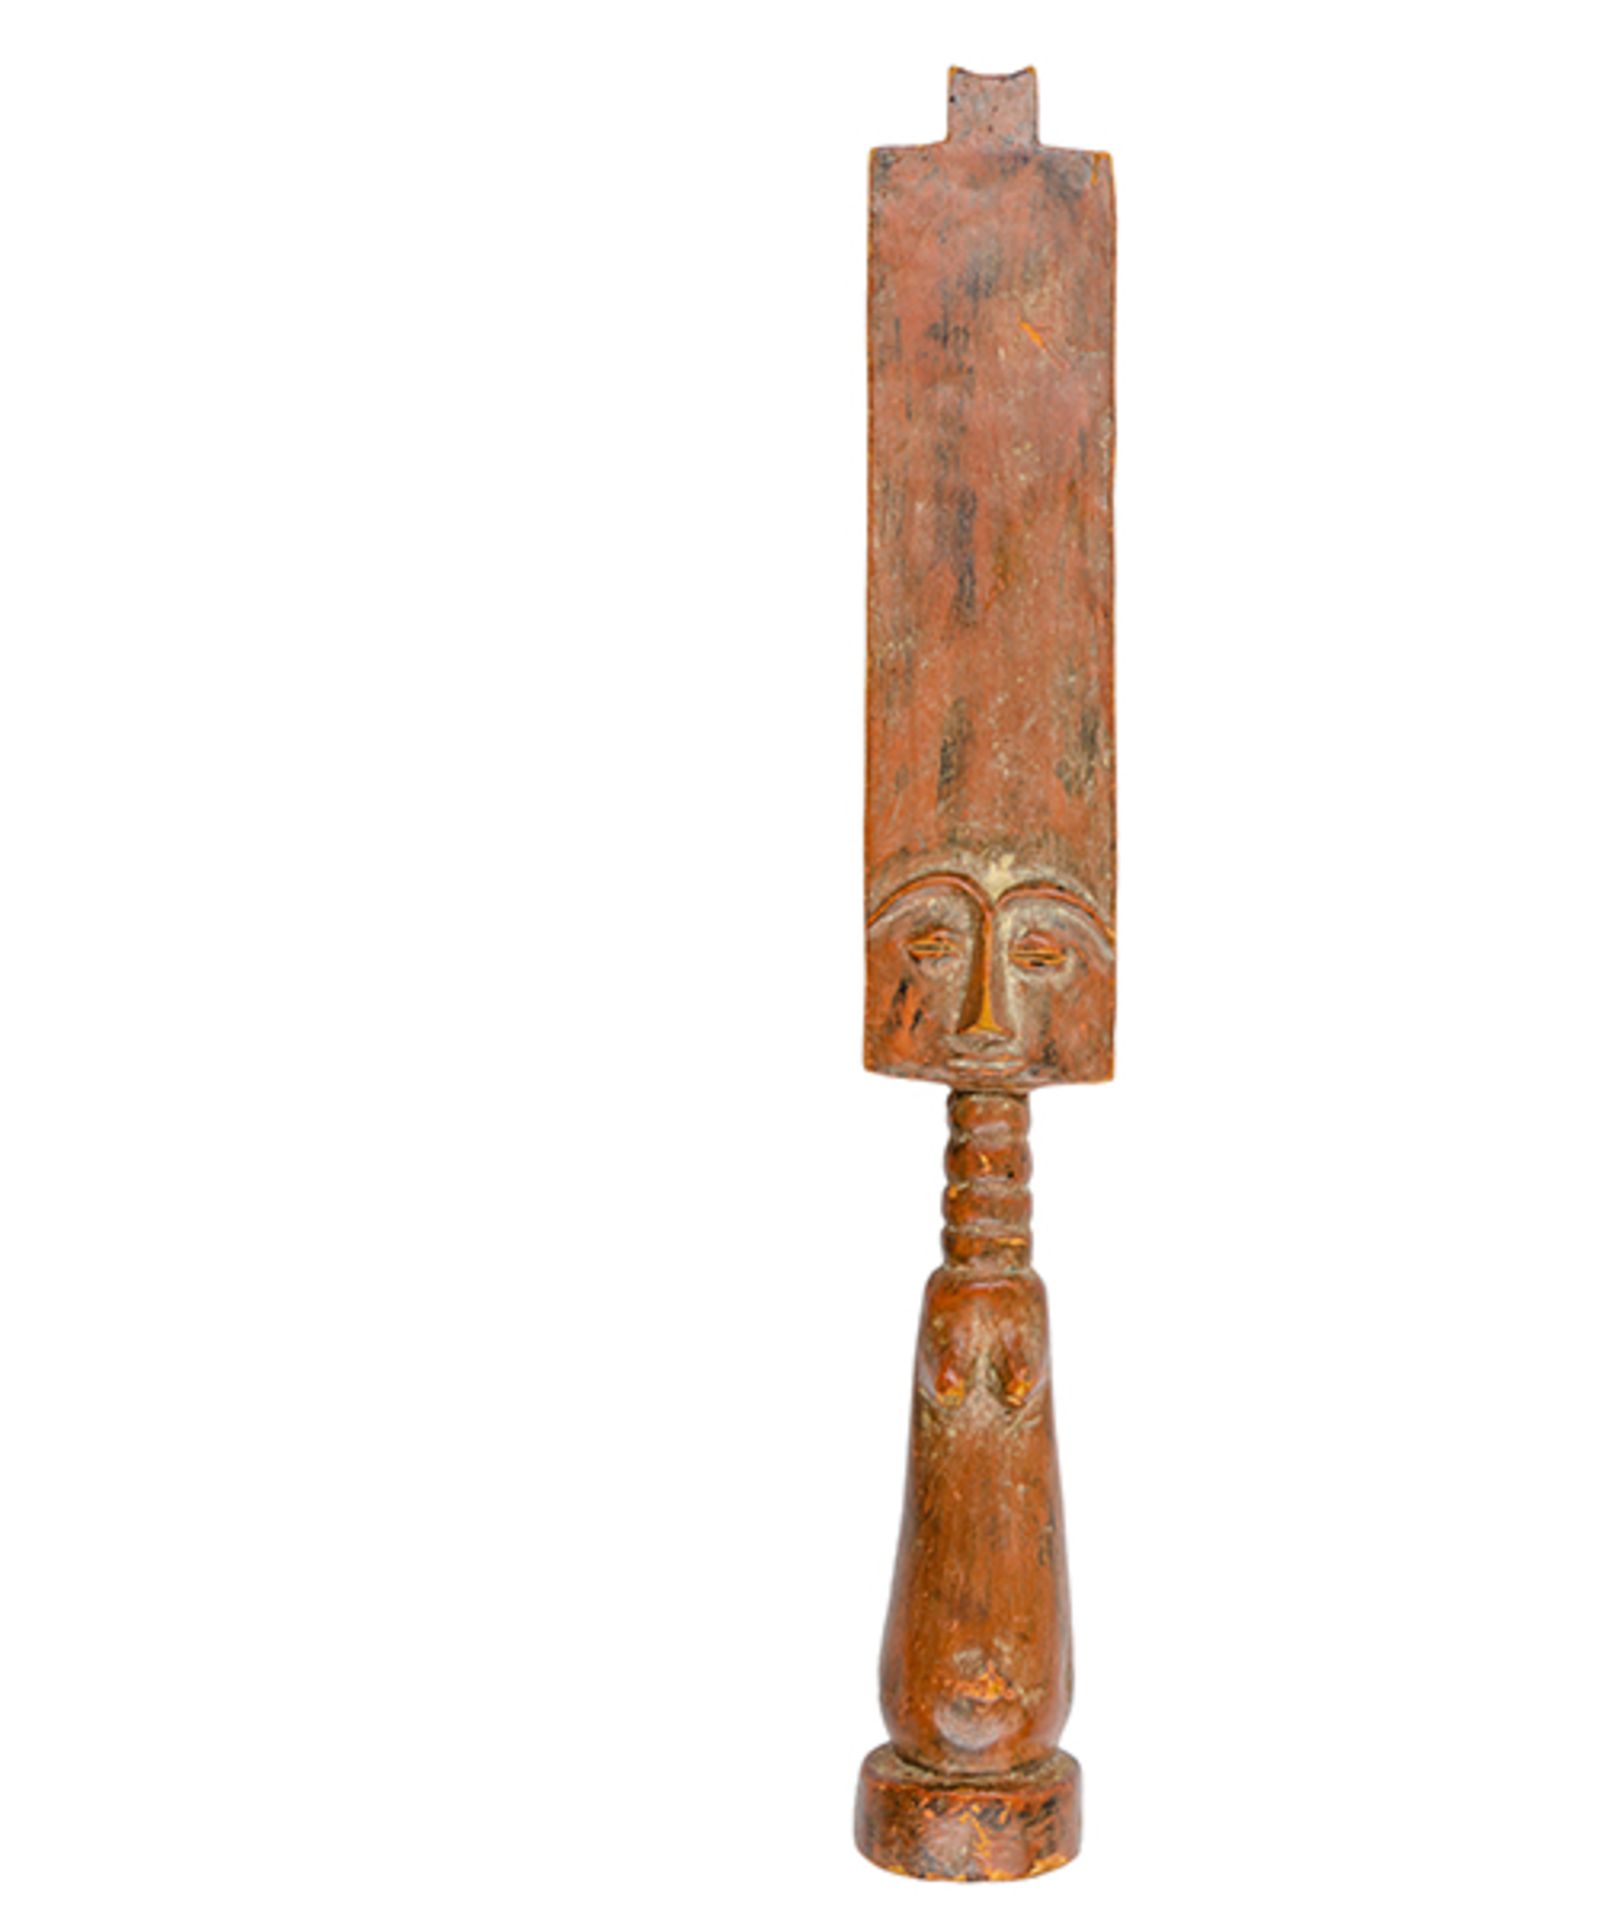 Afrikana - - Fanti, Ghana. Holz. Größe: 51 x 7 x 6,5 cm.Fantis sind weibliche Fruchtbarkeitspuppen